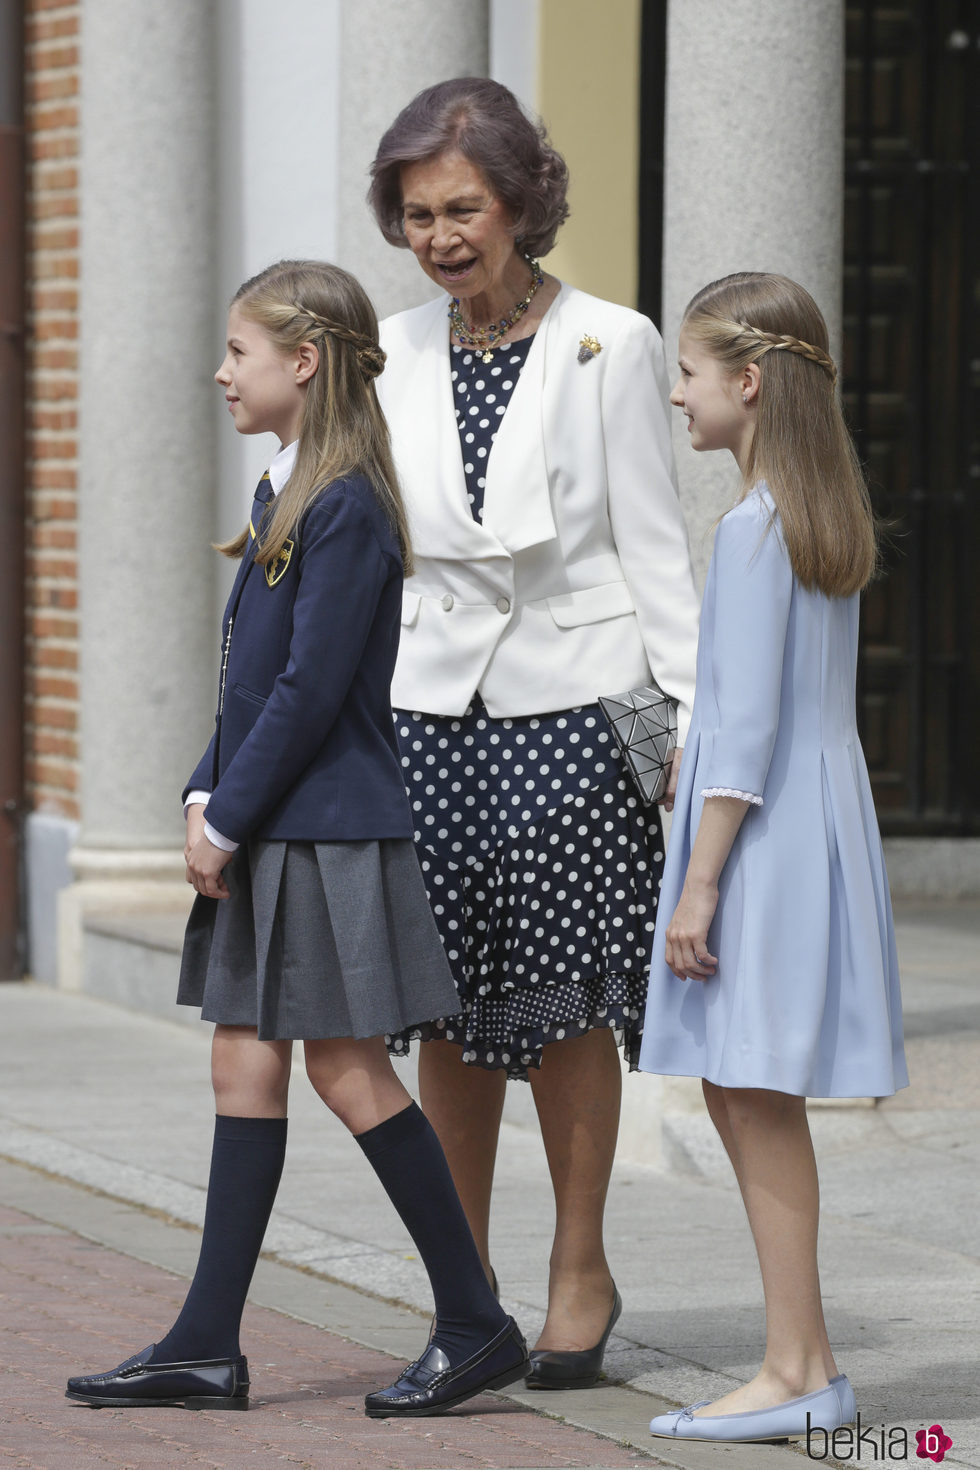 La Infanta Sofía con su hermana la Princesa Leonor y su abuela la Reina Sofía el día de su Comunión